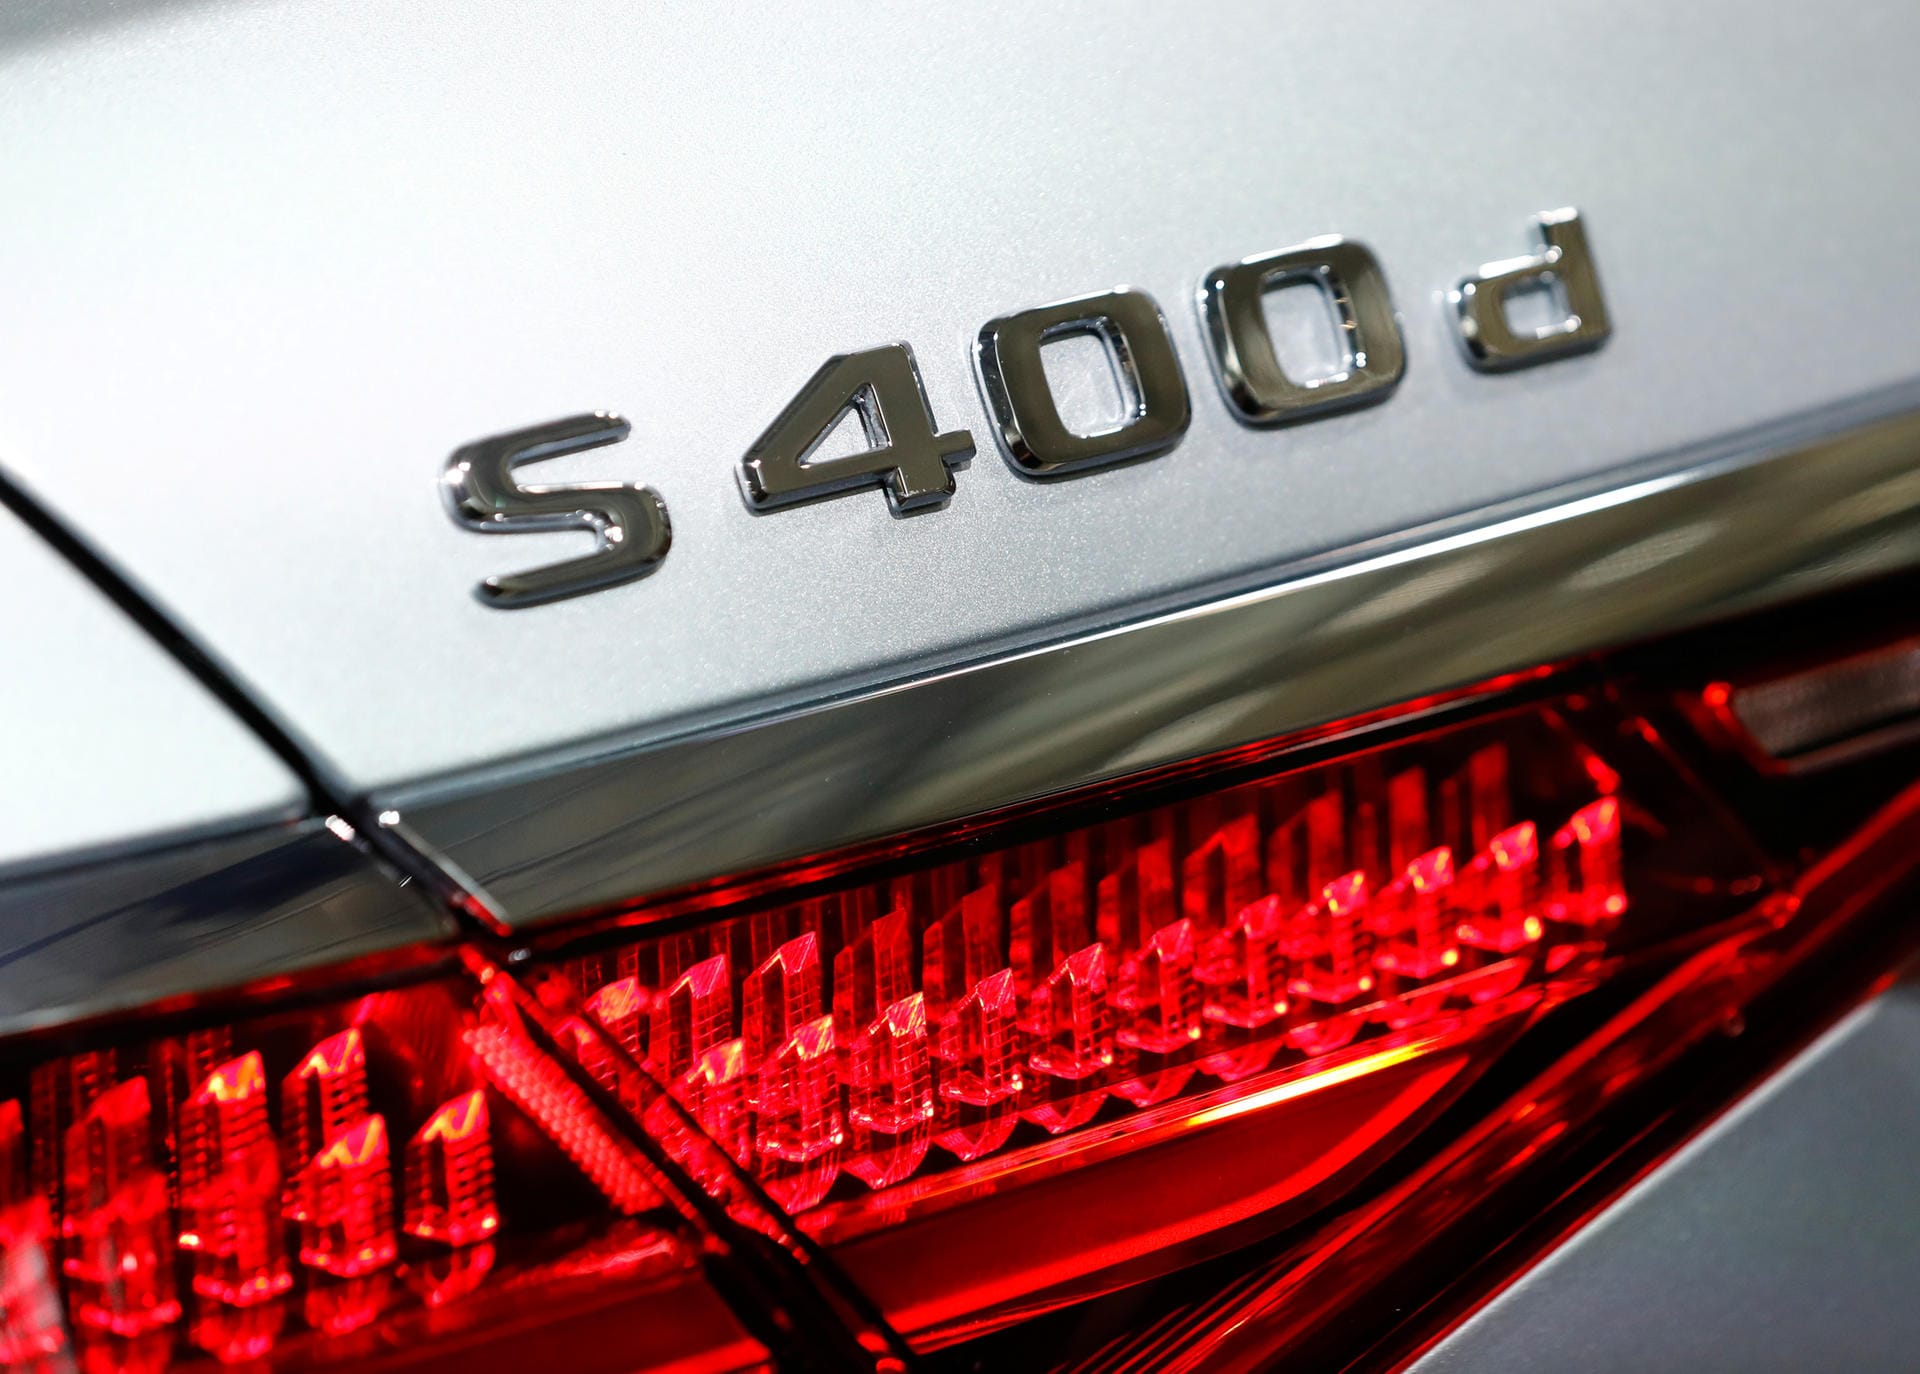 Die S-Klasse als Diesel gibt es als S 350 d mit Hinterrad- und als S 350 d 4Matic mit Allradantrieb (jeweils mit 210 kW/286 PS) sowie als S 400 d 4Matic mit 243 kW/330 PS.